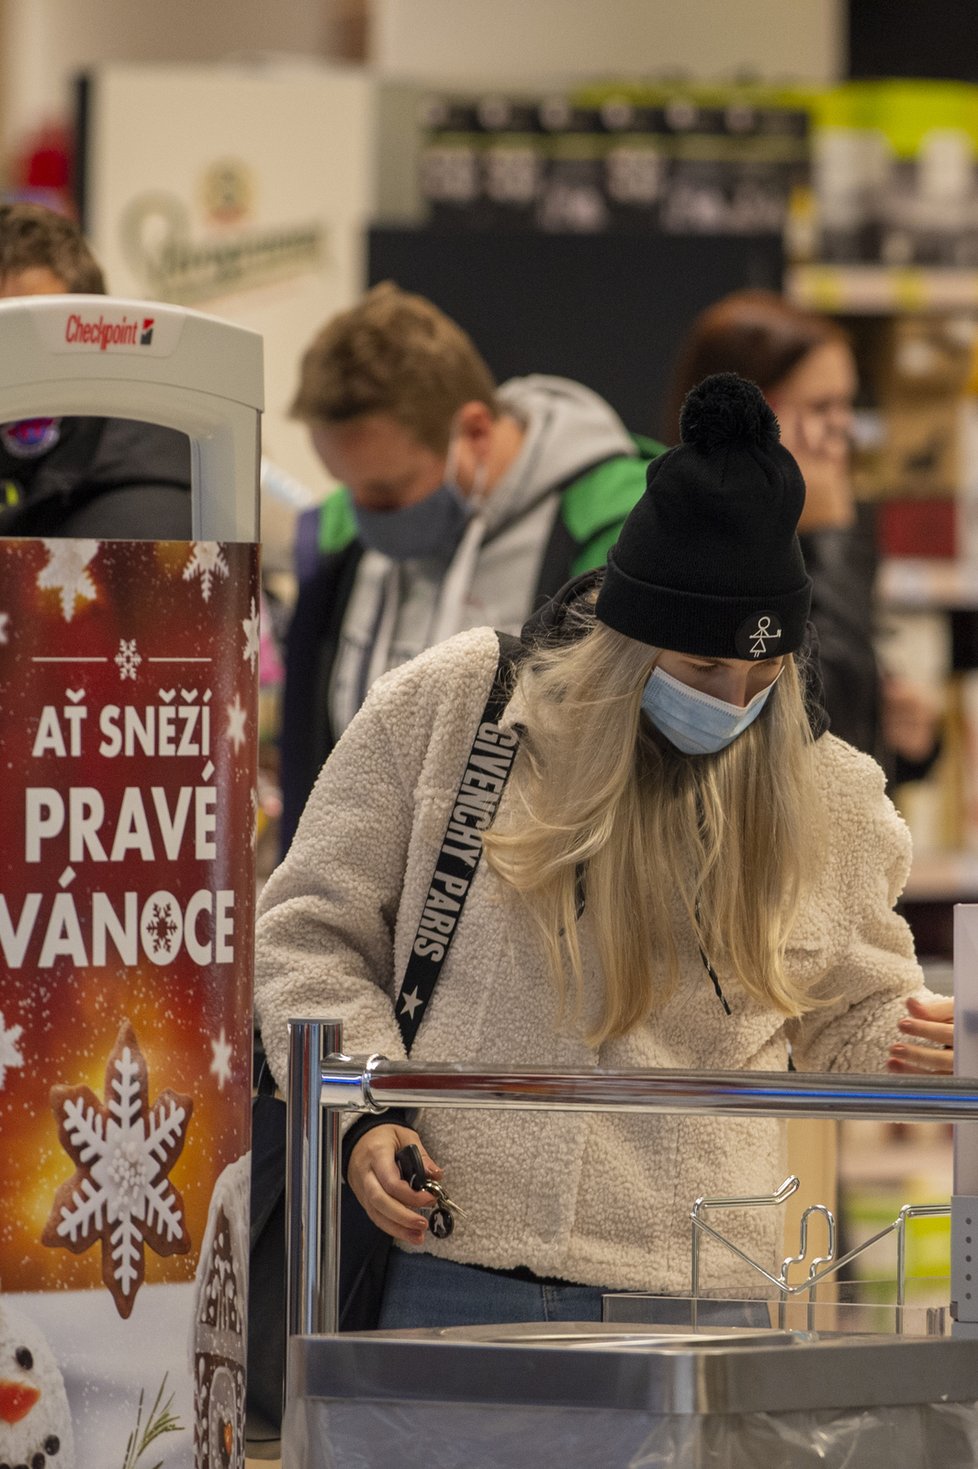 Češi využili toho, že supermarket v Českých Budějovicích může být otevřený: Fronty u pokladen a narváno (8. 11. 2020).